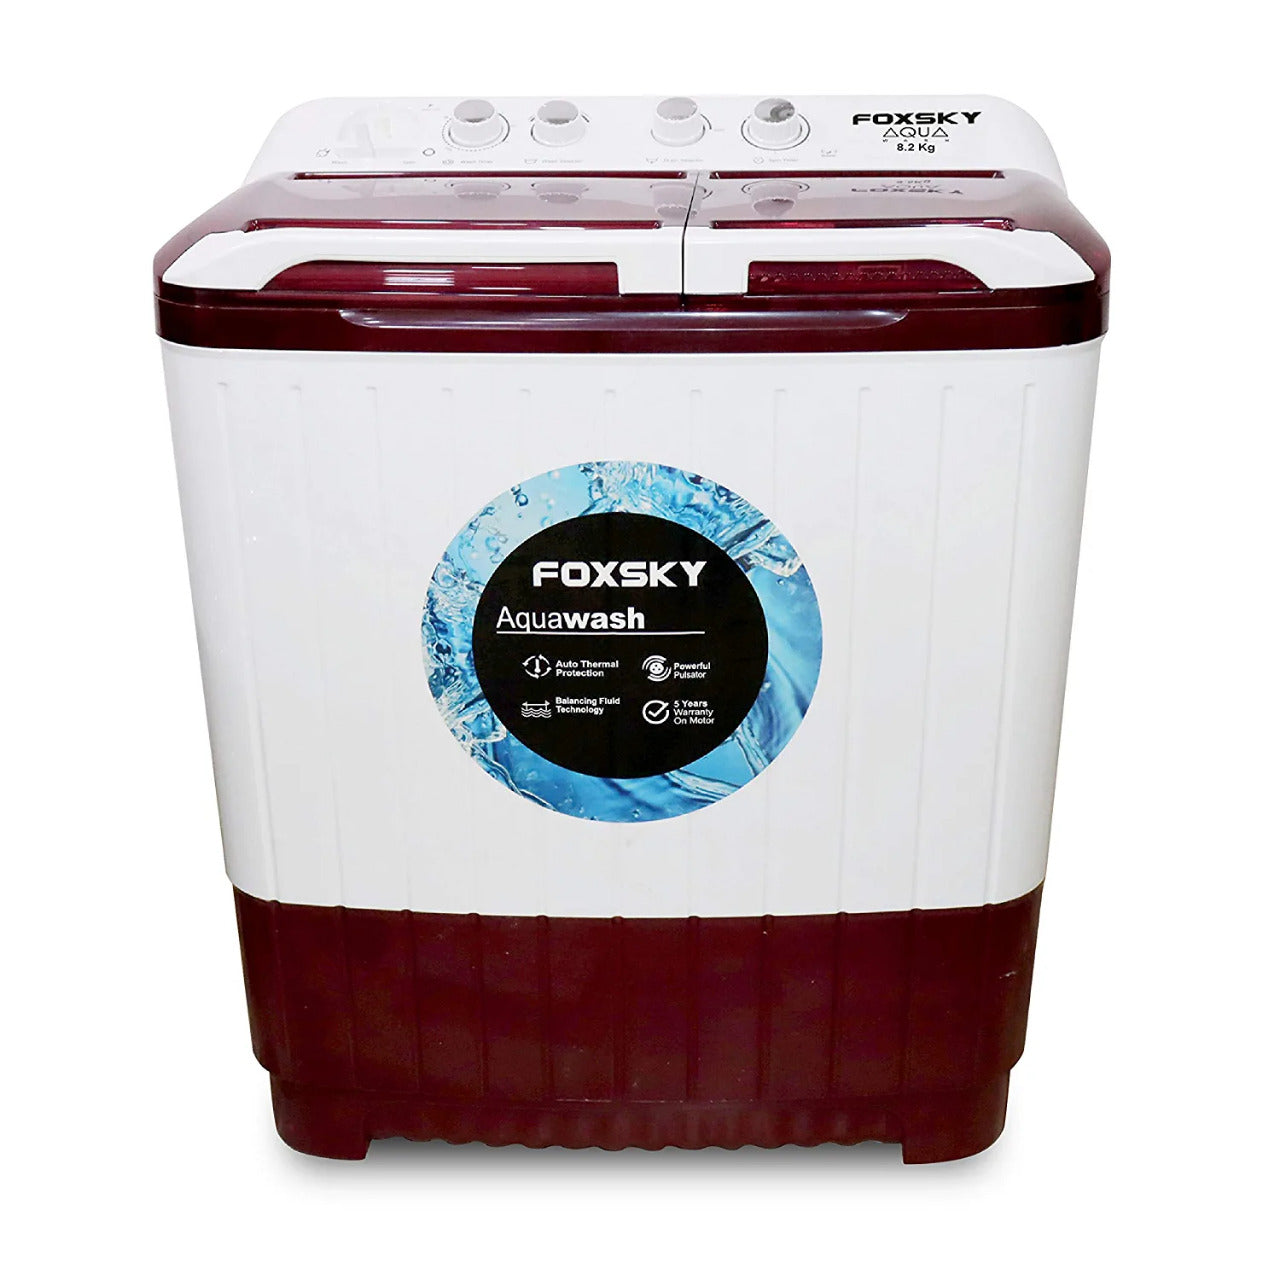 Foxsky 8.2 kg Semi Automatic Top Loading Washing Machine